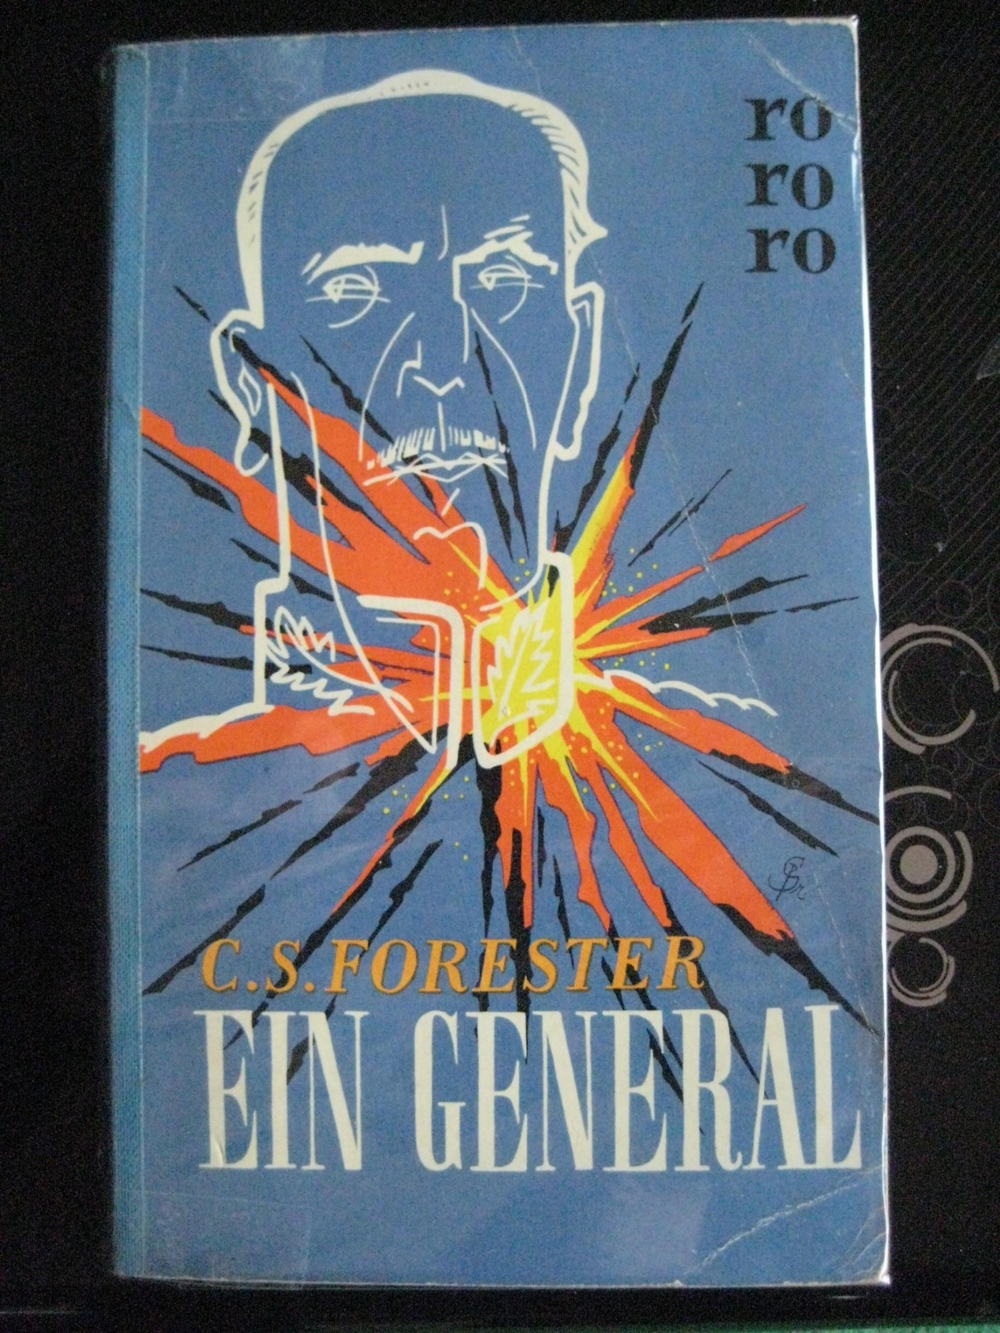 Spannender Roman Ein General von C. S. Forester in sehr gutem Zustand, RoRoRo Verlag, 192 Seiten